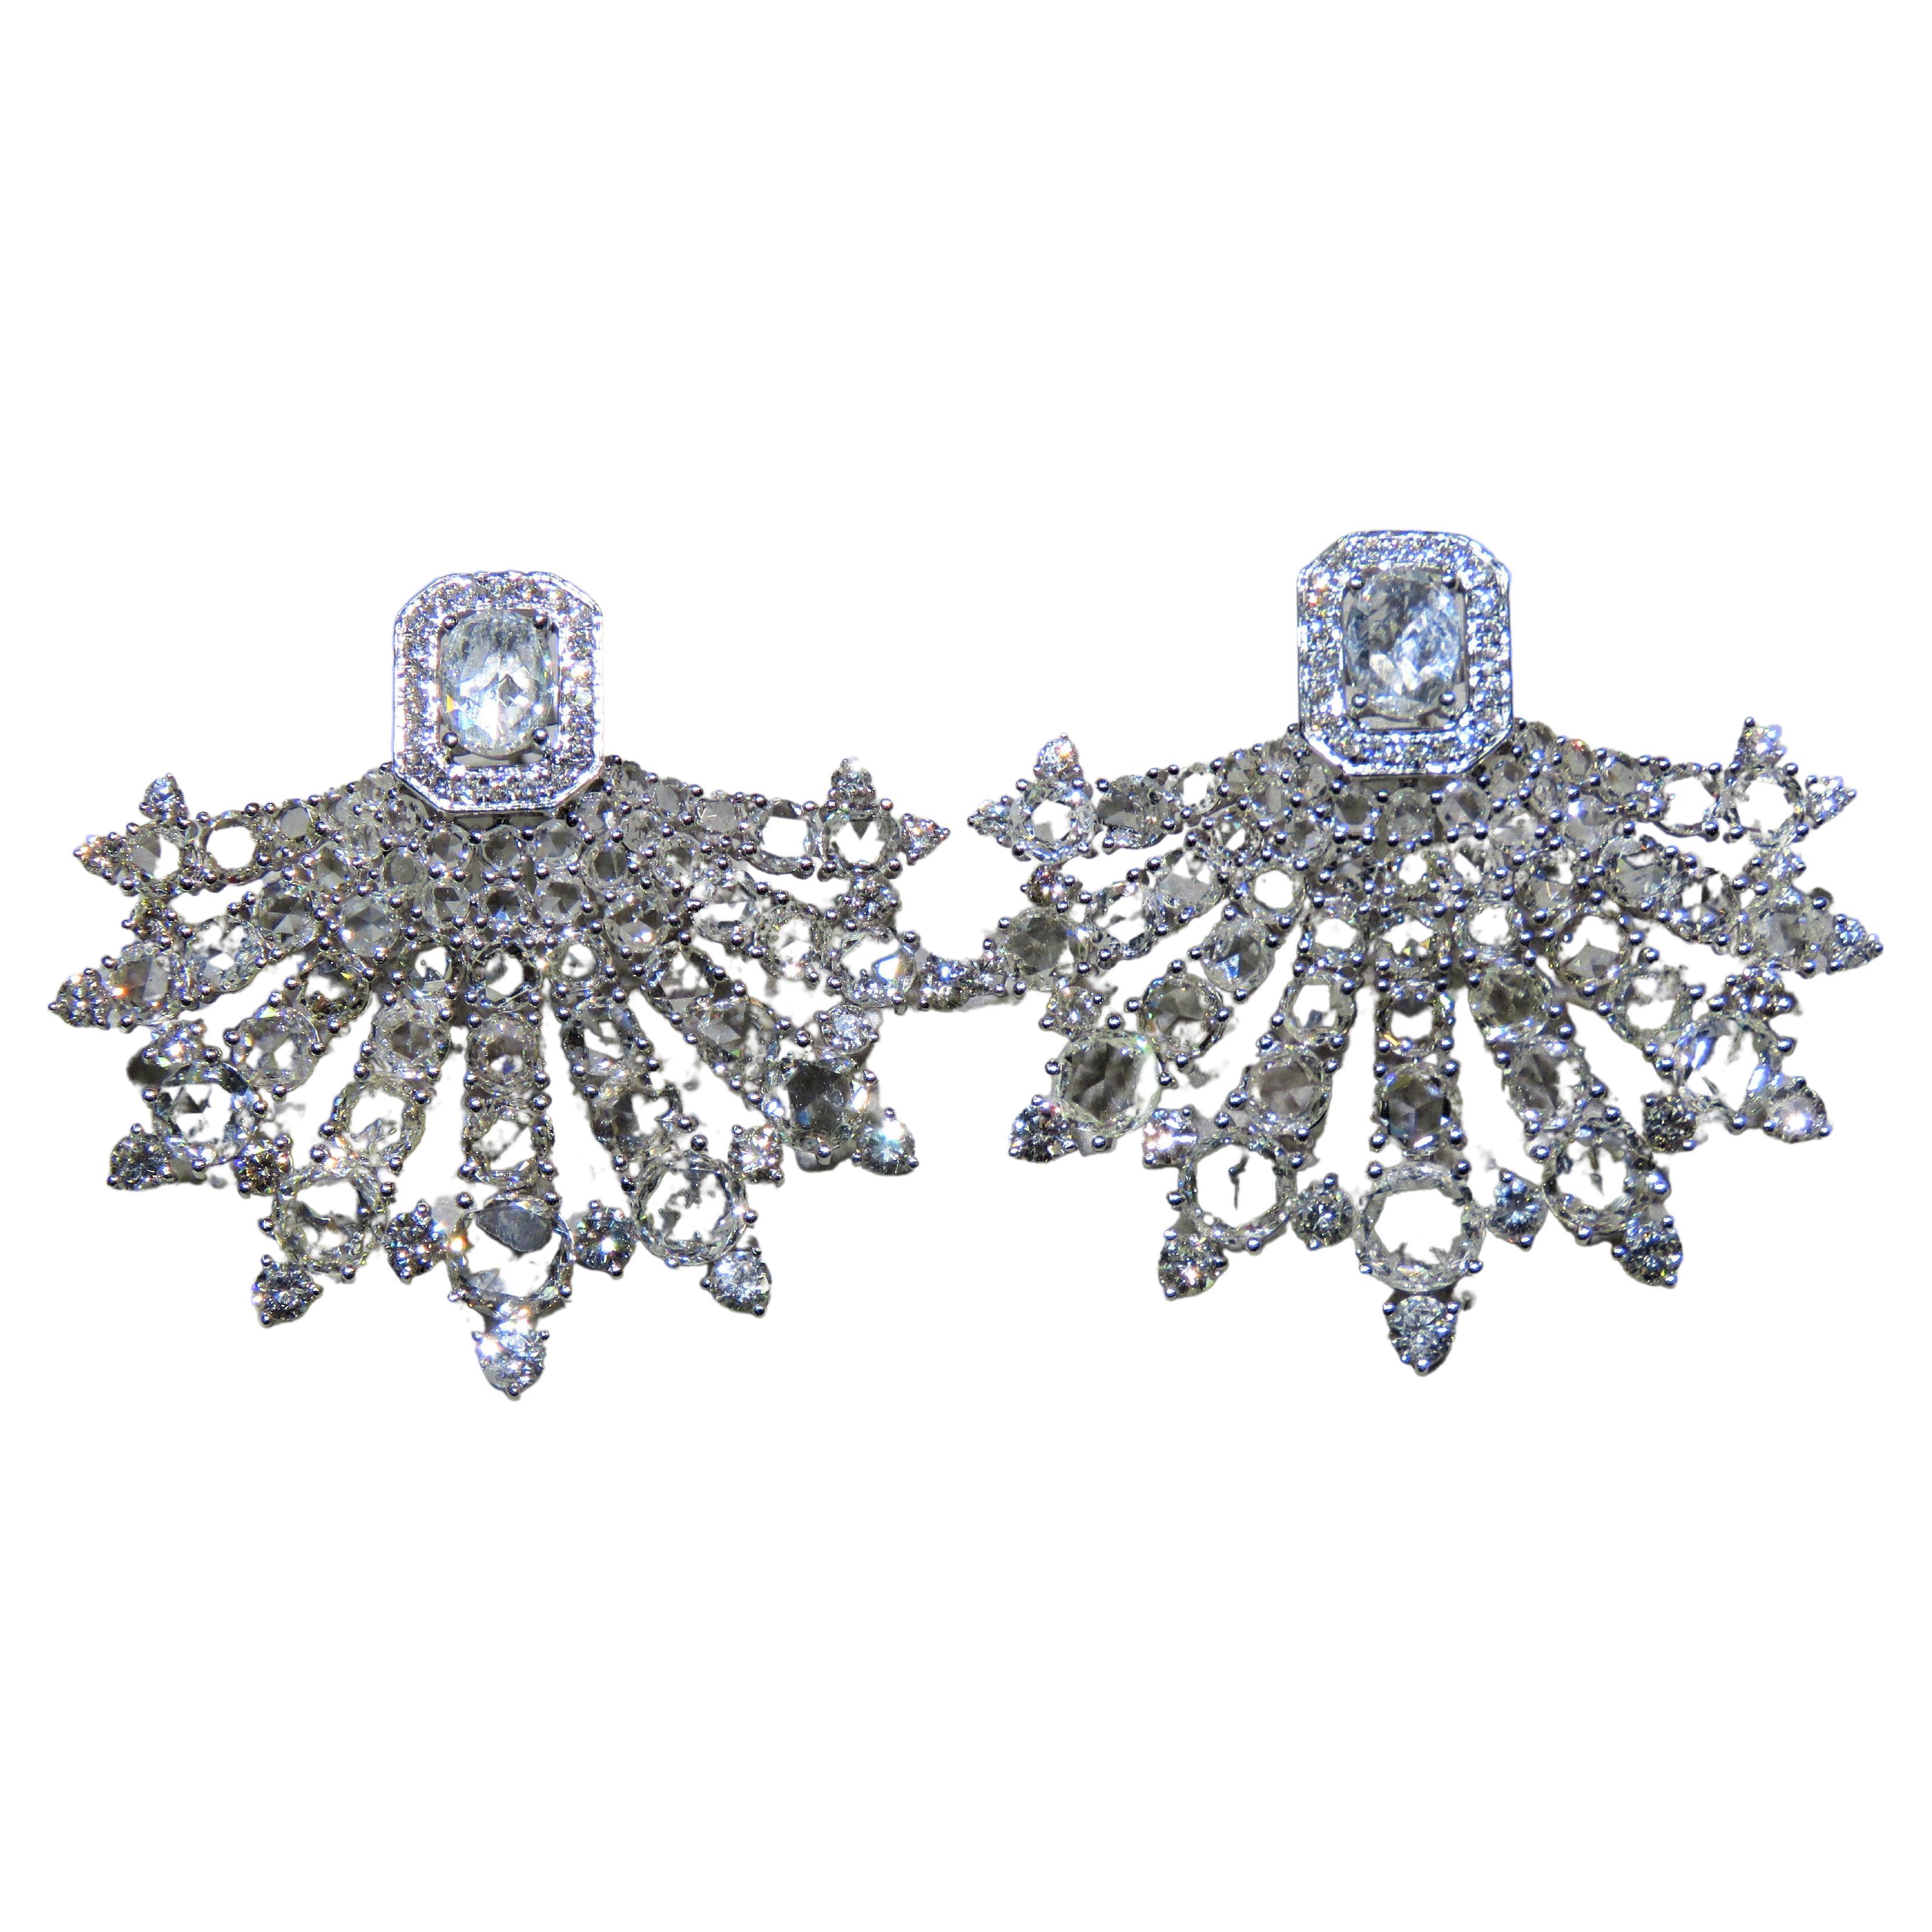 NWT$48, 700 18KT Gold Fancy 10ct Gorgeous Glittering Rose Cut Diamond Earrings